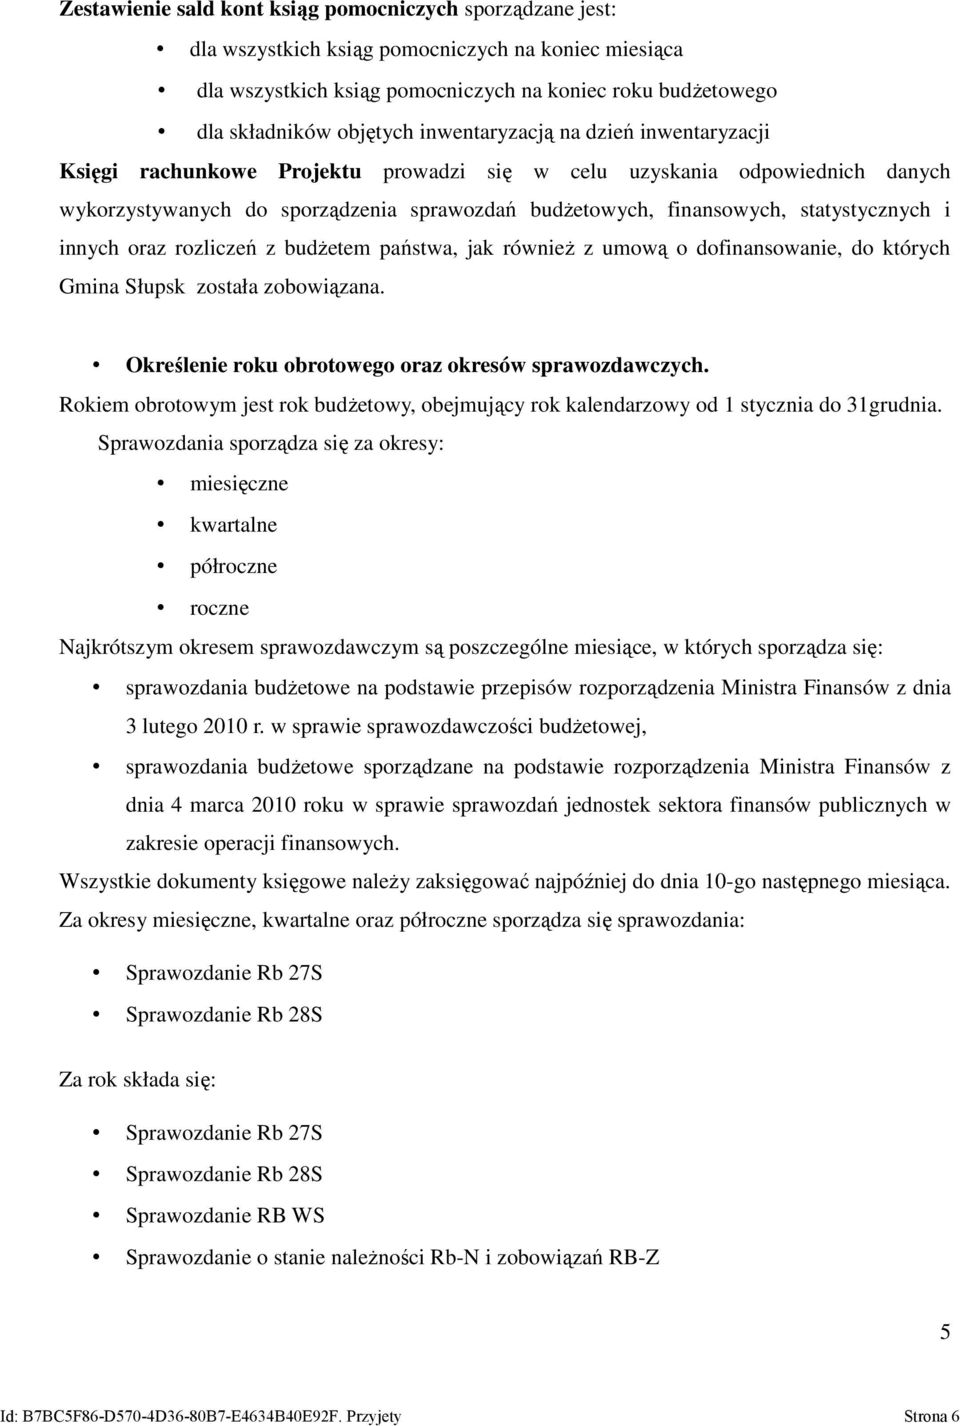 statystycznych i innych oraz rozliczeń z budżetem państwa, jak również z umową o dofinansowanie, do których Gmina Słupsk została zobowiązana. Określenie roku obrotowego oraz okresów sprawozdawczych.